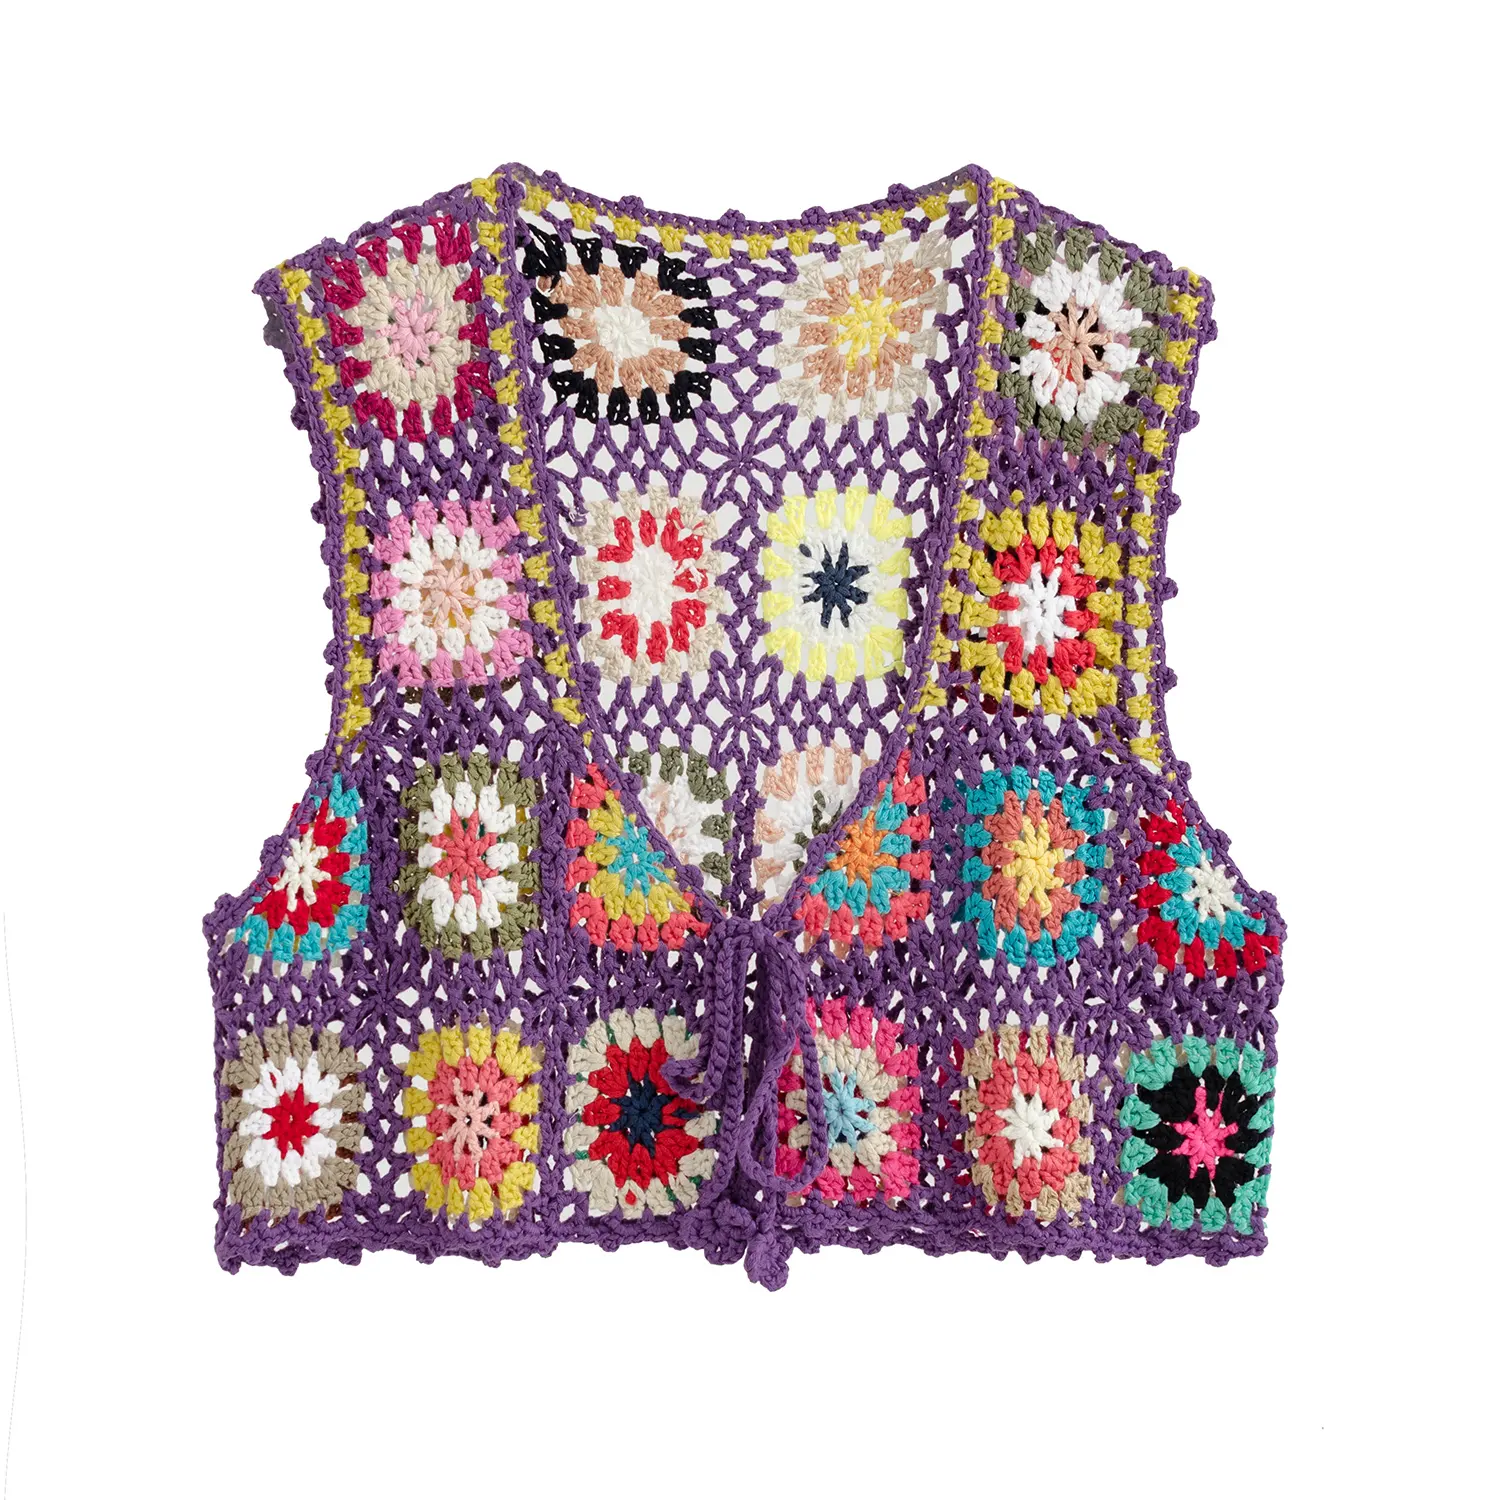 カスタムOEM & ODMかぎ針編みの女性のセーターベスト中空アウト手編みニットプルオーバーかぎ針編みのセーターベスト